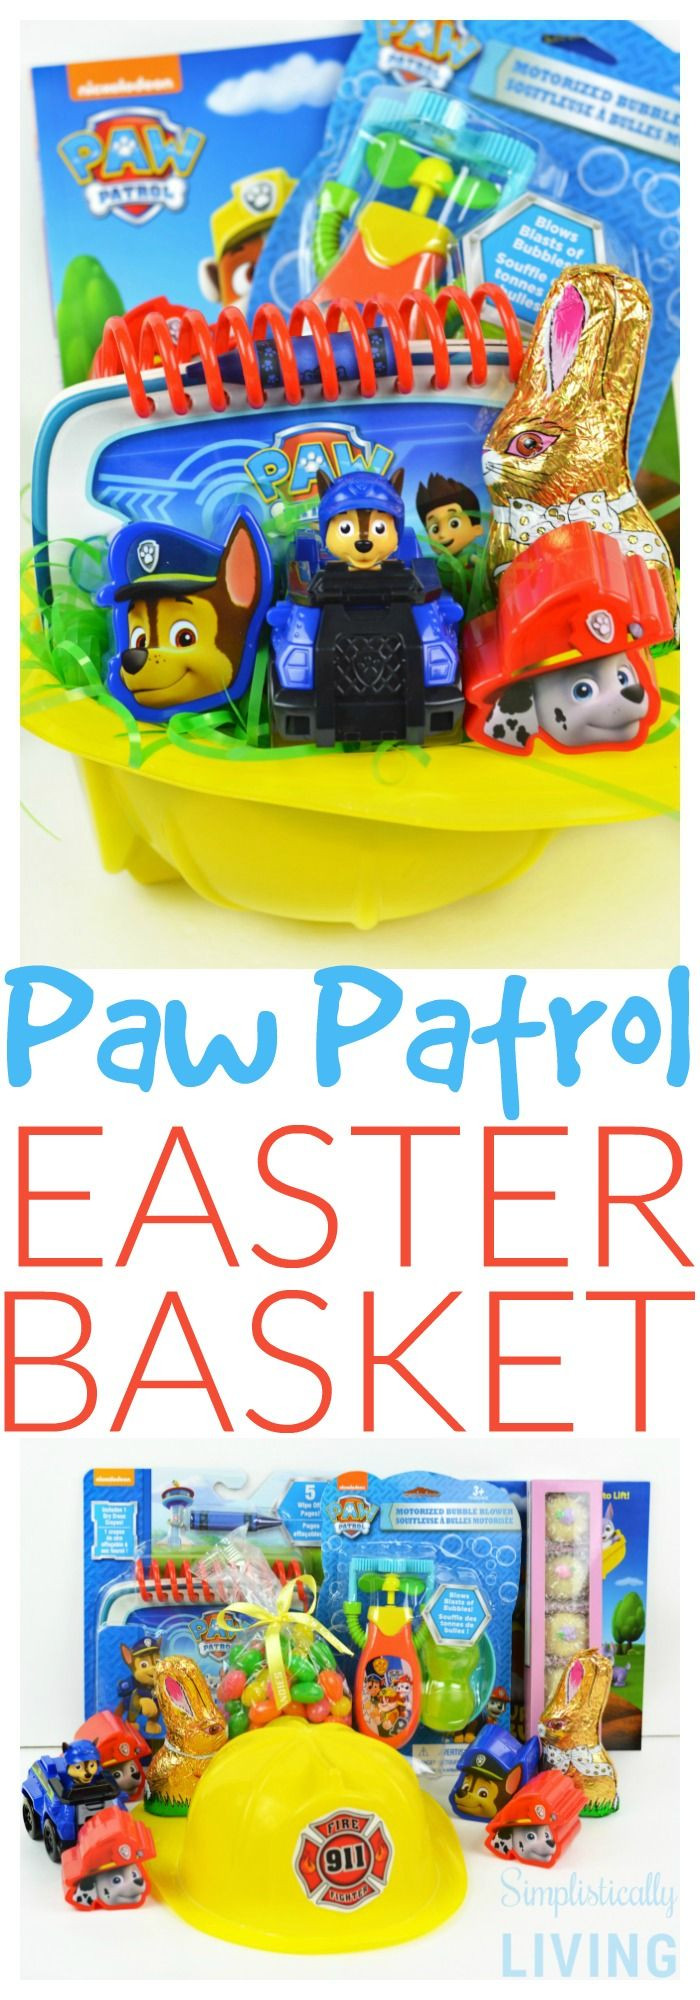 DIY Easter Basket For Toddler
 DIY Paw Patrol Easter Basket For a Toddler